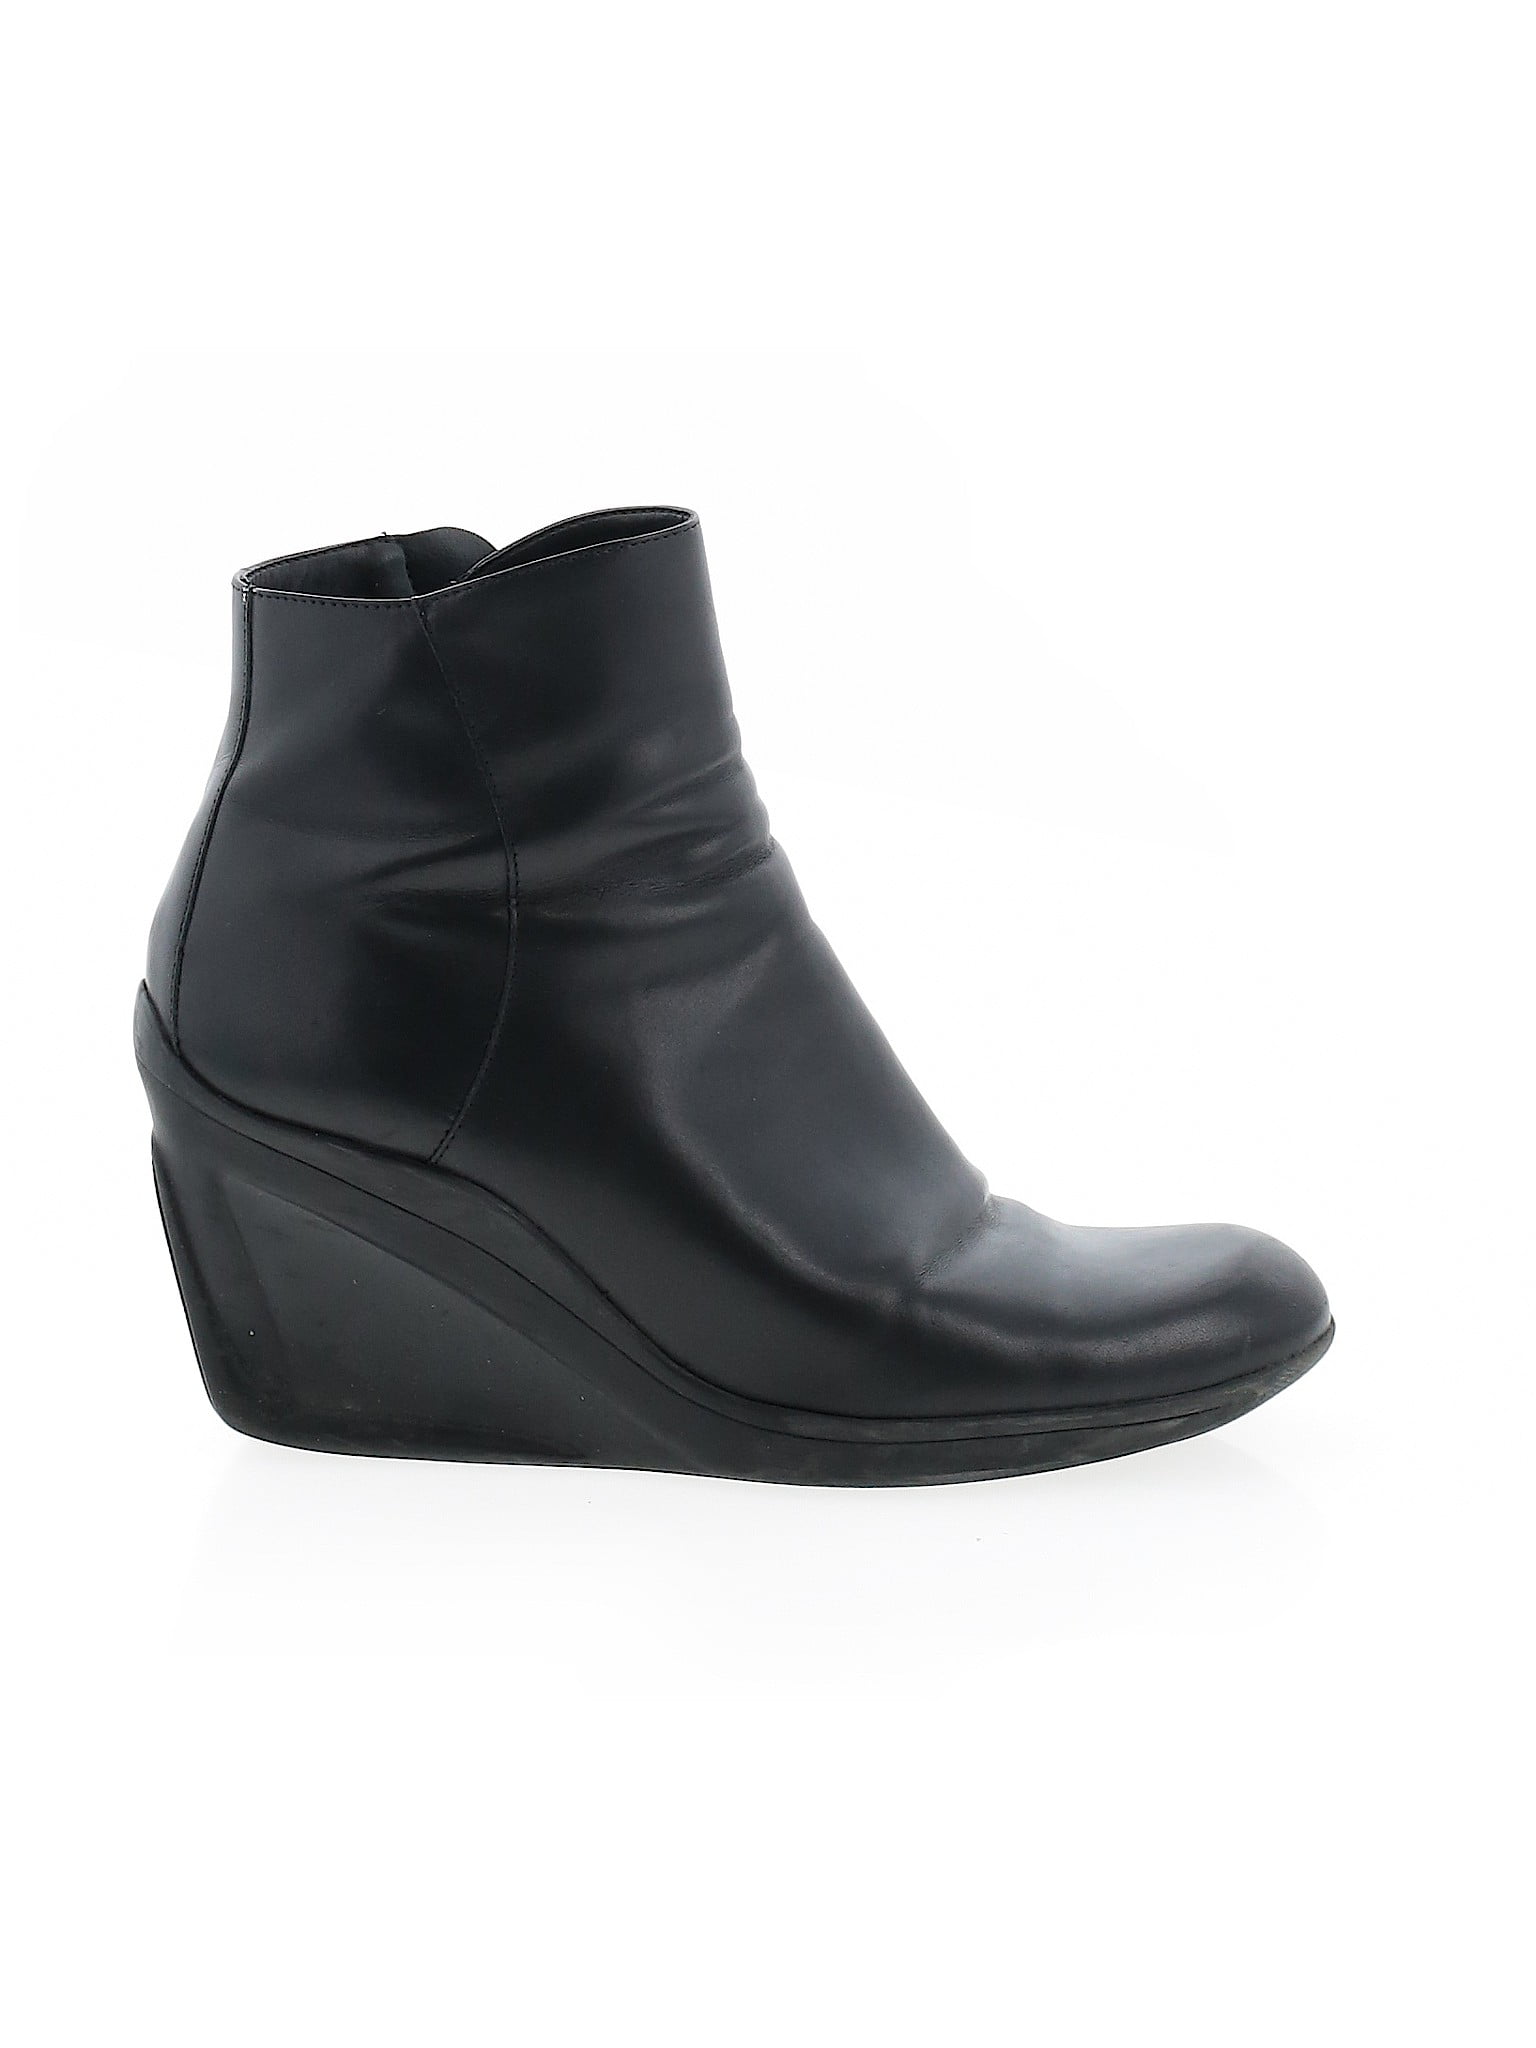 Gianni Bini - Pre-Owned Gianni Bini Women's Size 9 Ankle Boots ...